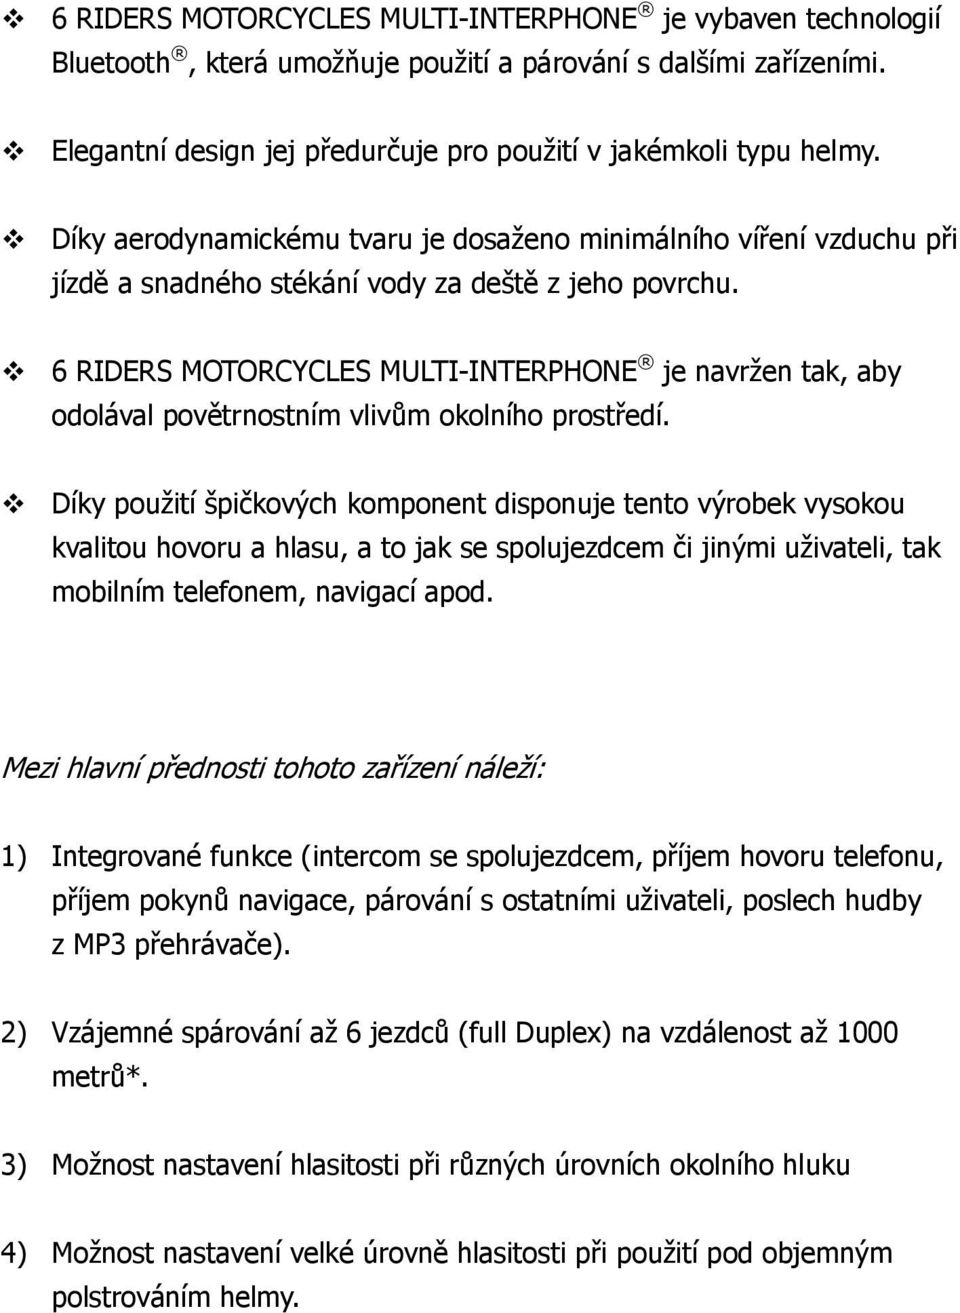 6 RIDERS MOTORCYCLES MULTI-INTERPHONE je navržen tak, aby odolával povětrnostním vlivům okolního prostředí.